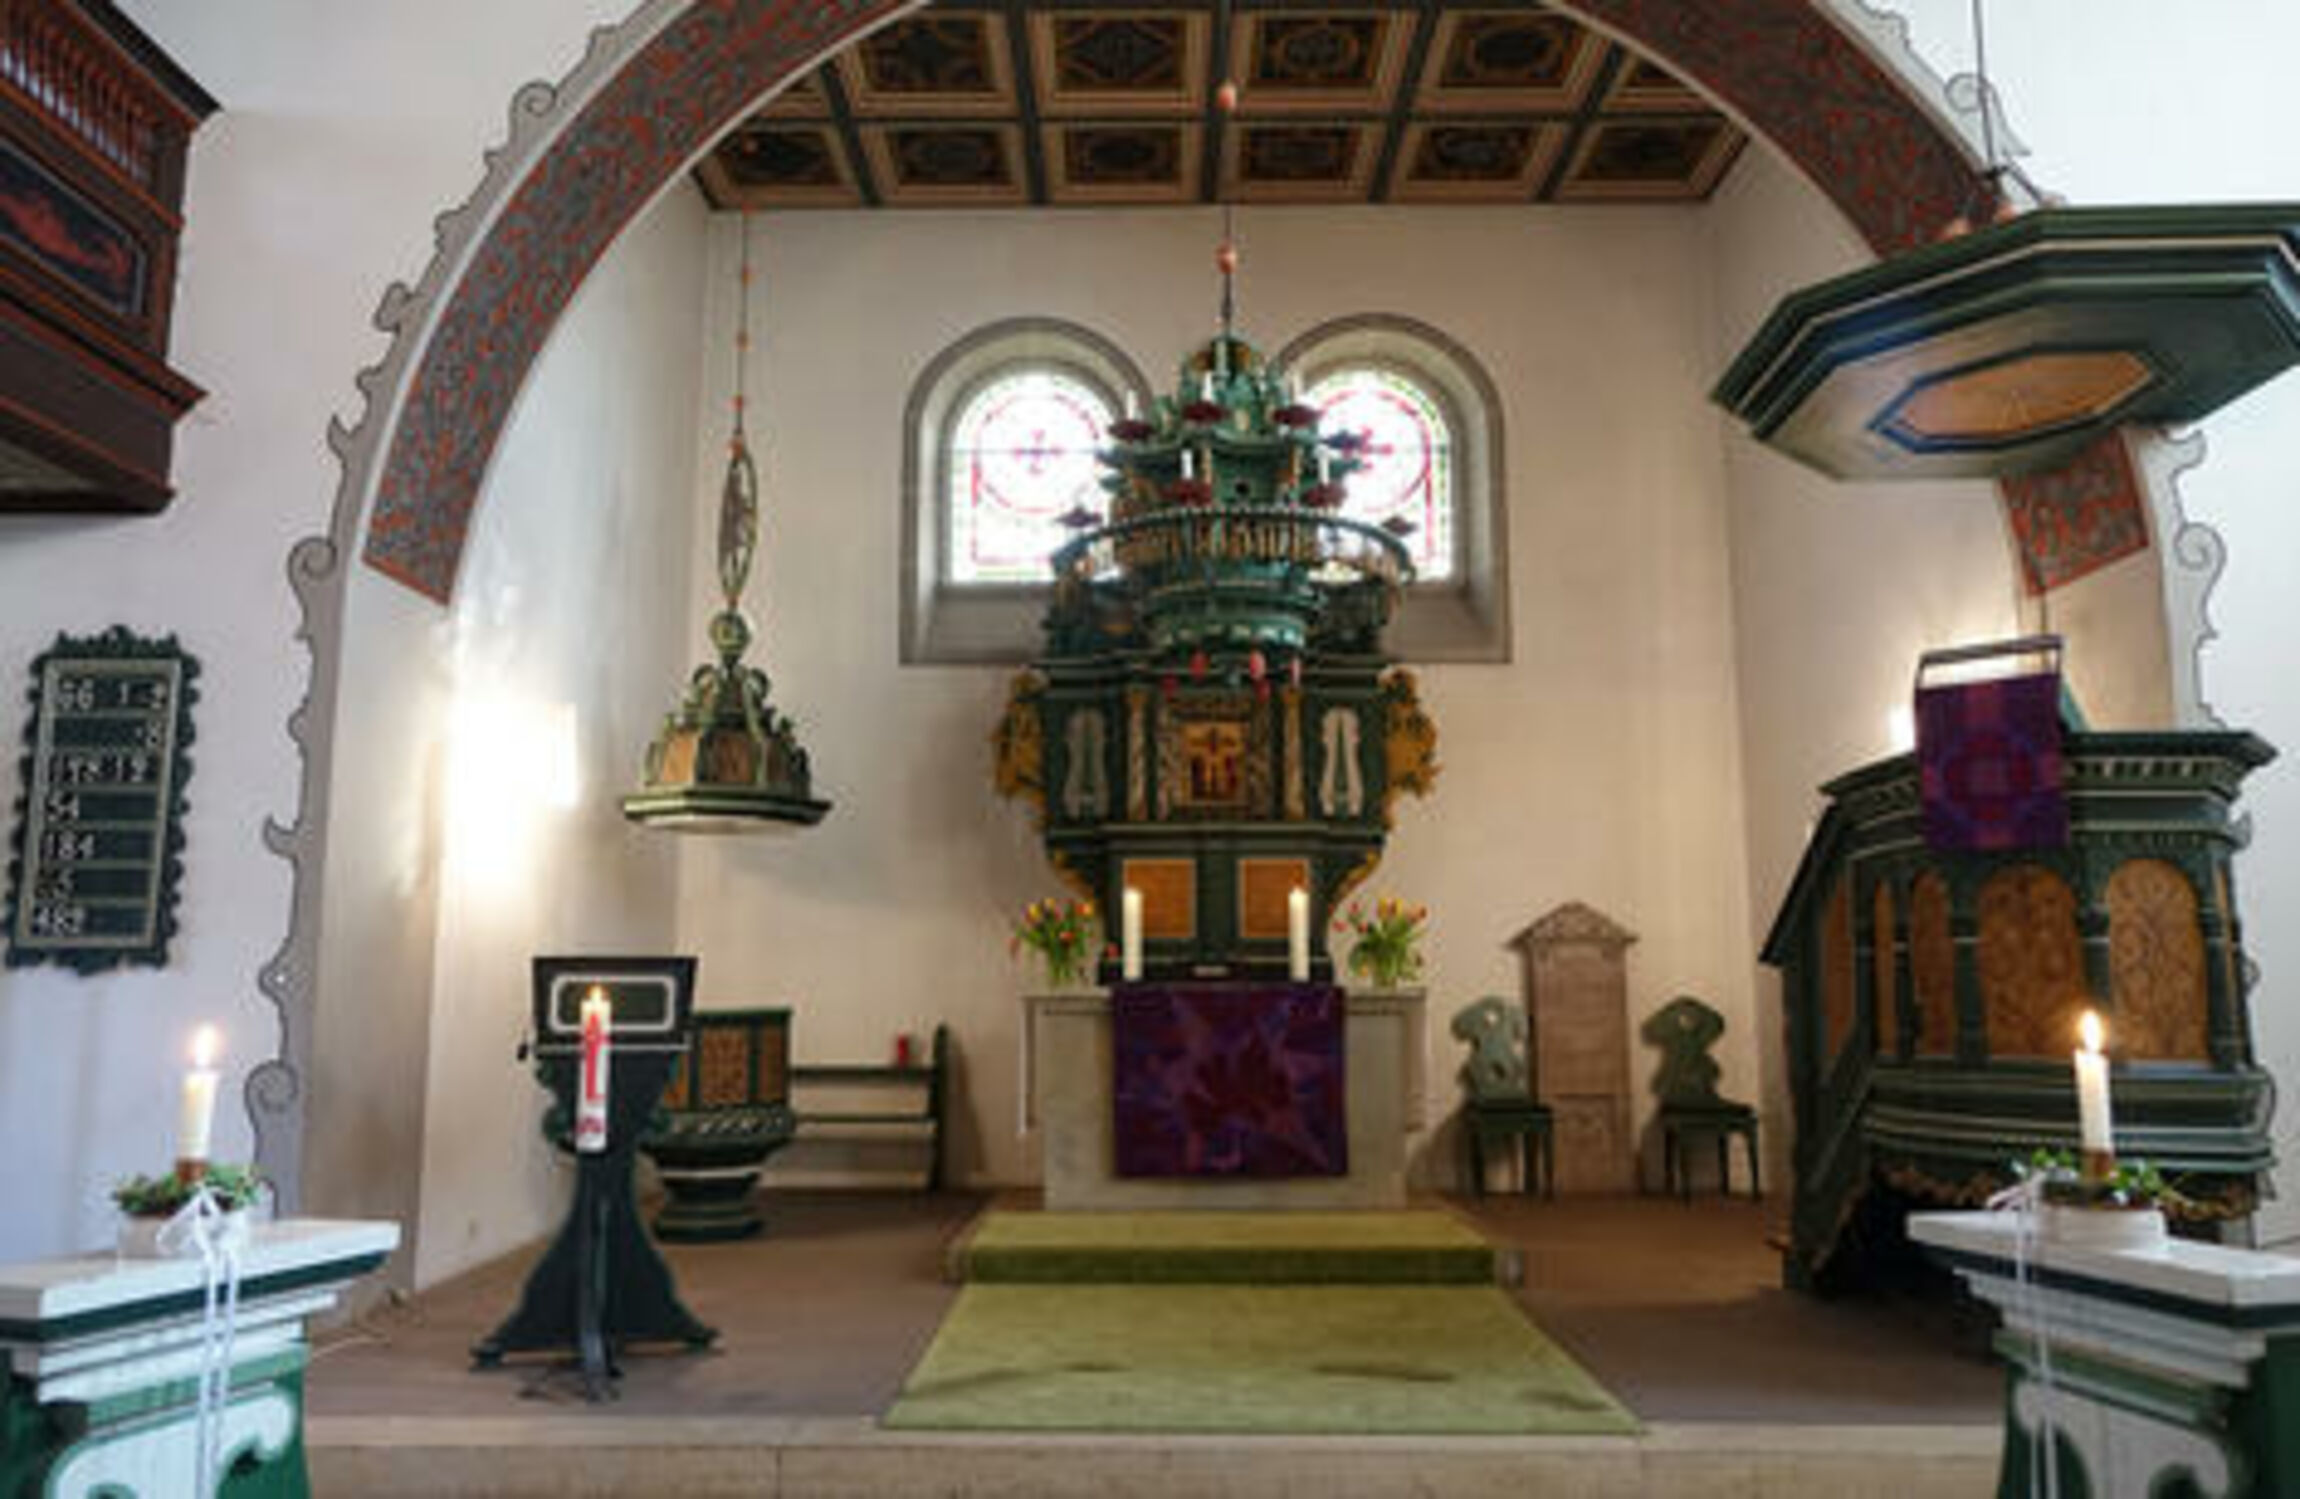 St. Aegidien-Kirche - Altarraum | Foto@ J. Riesener